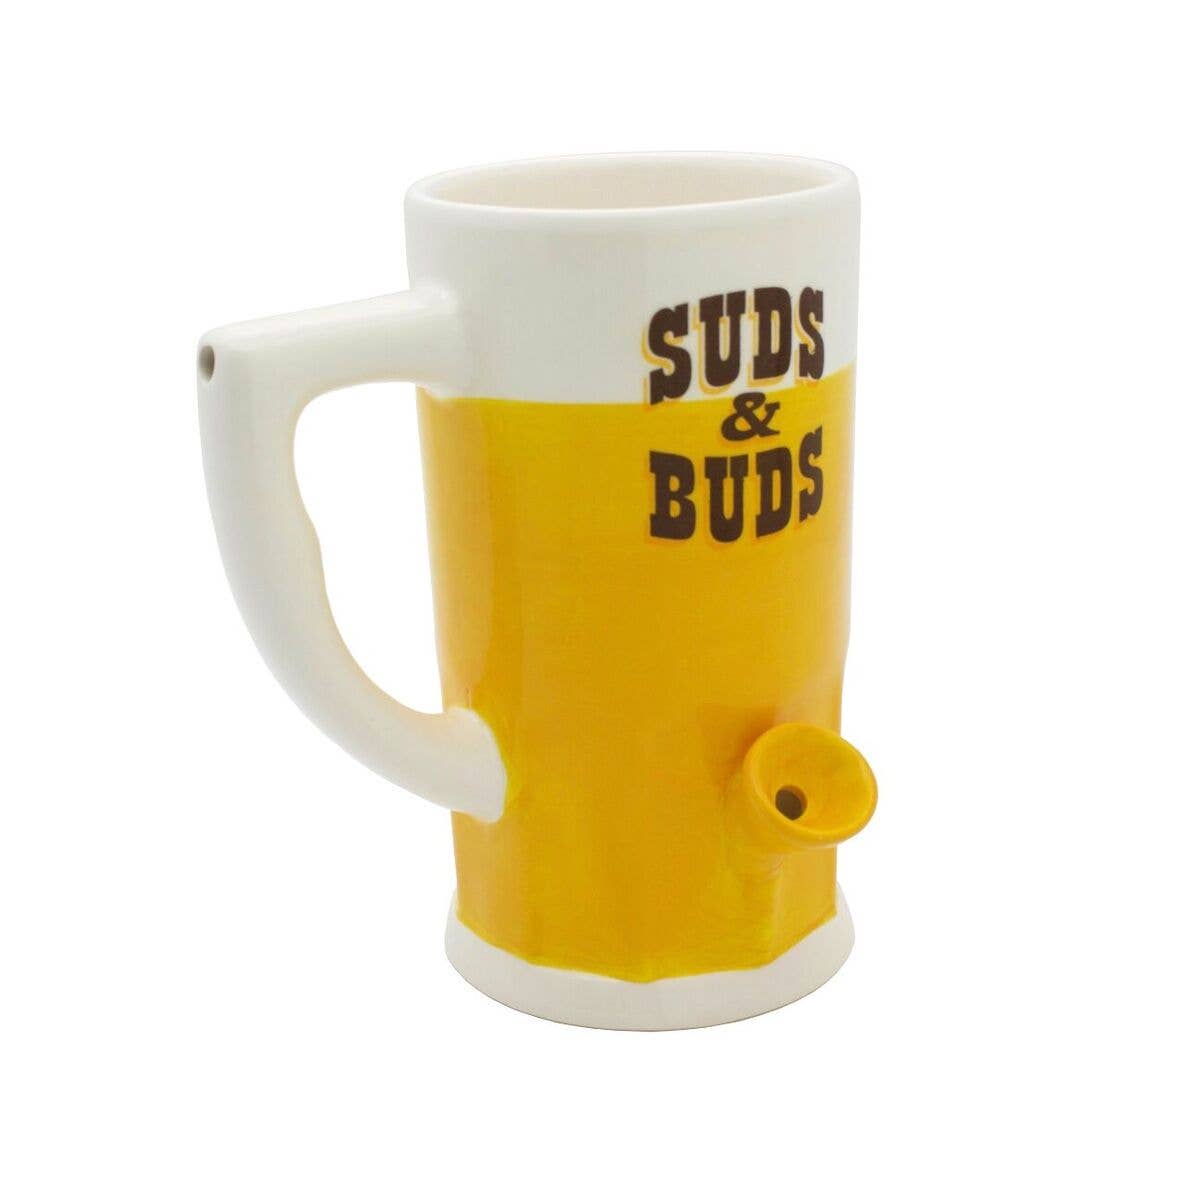 Suds & Buds Mug - Hidden Gems Novelty